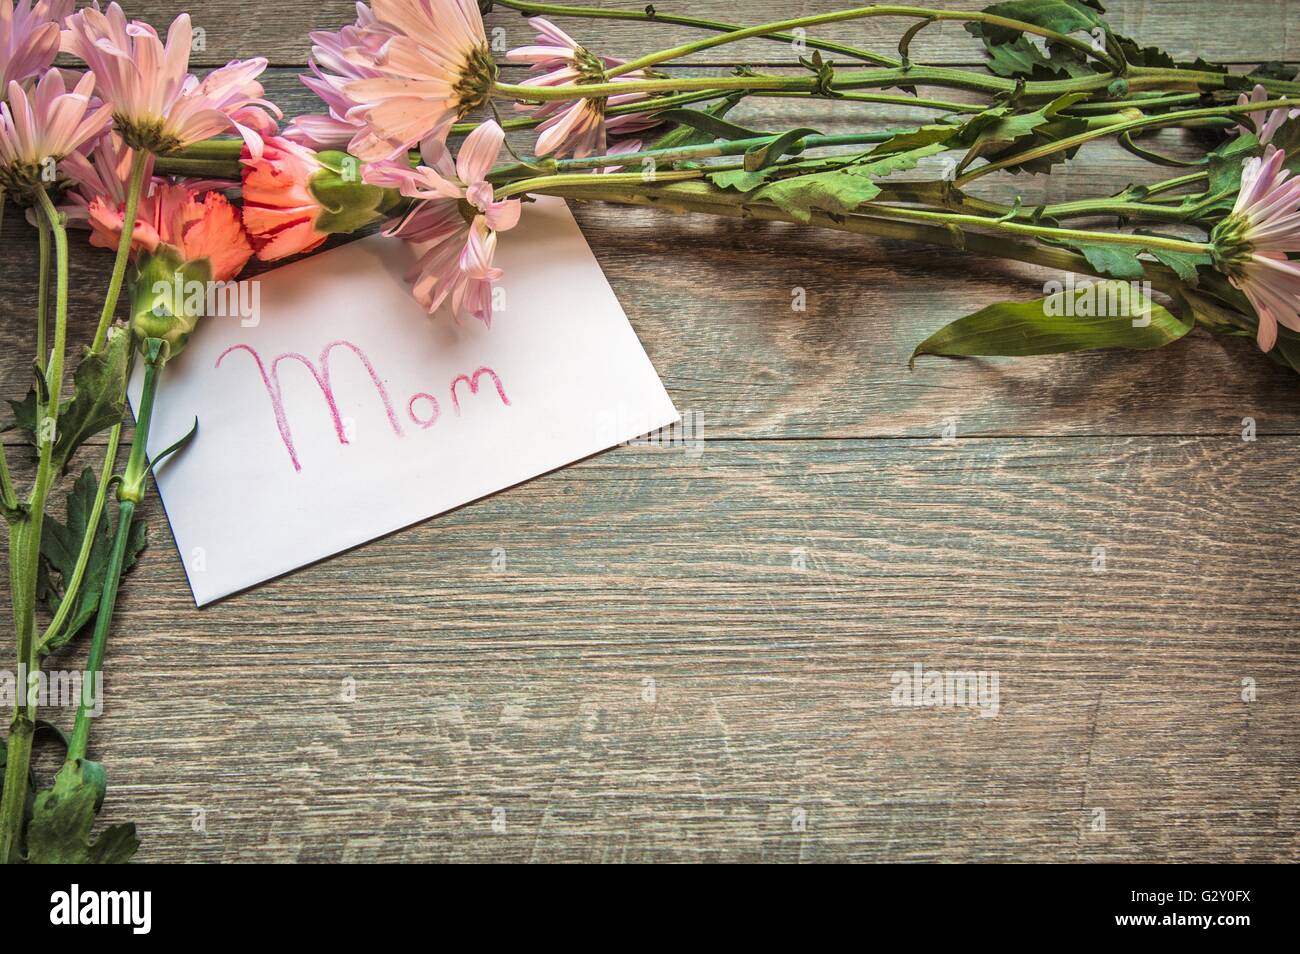 Cadeau pour maman. Flowers frame une carte manuscrite pour maman. Tourné par le haut avec fond rustique et copier l'espace. Banque D'Images